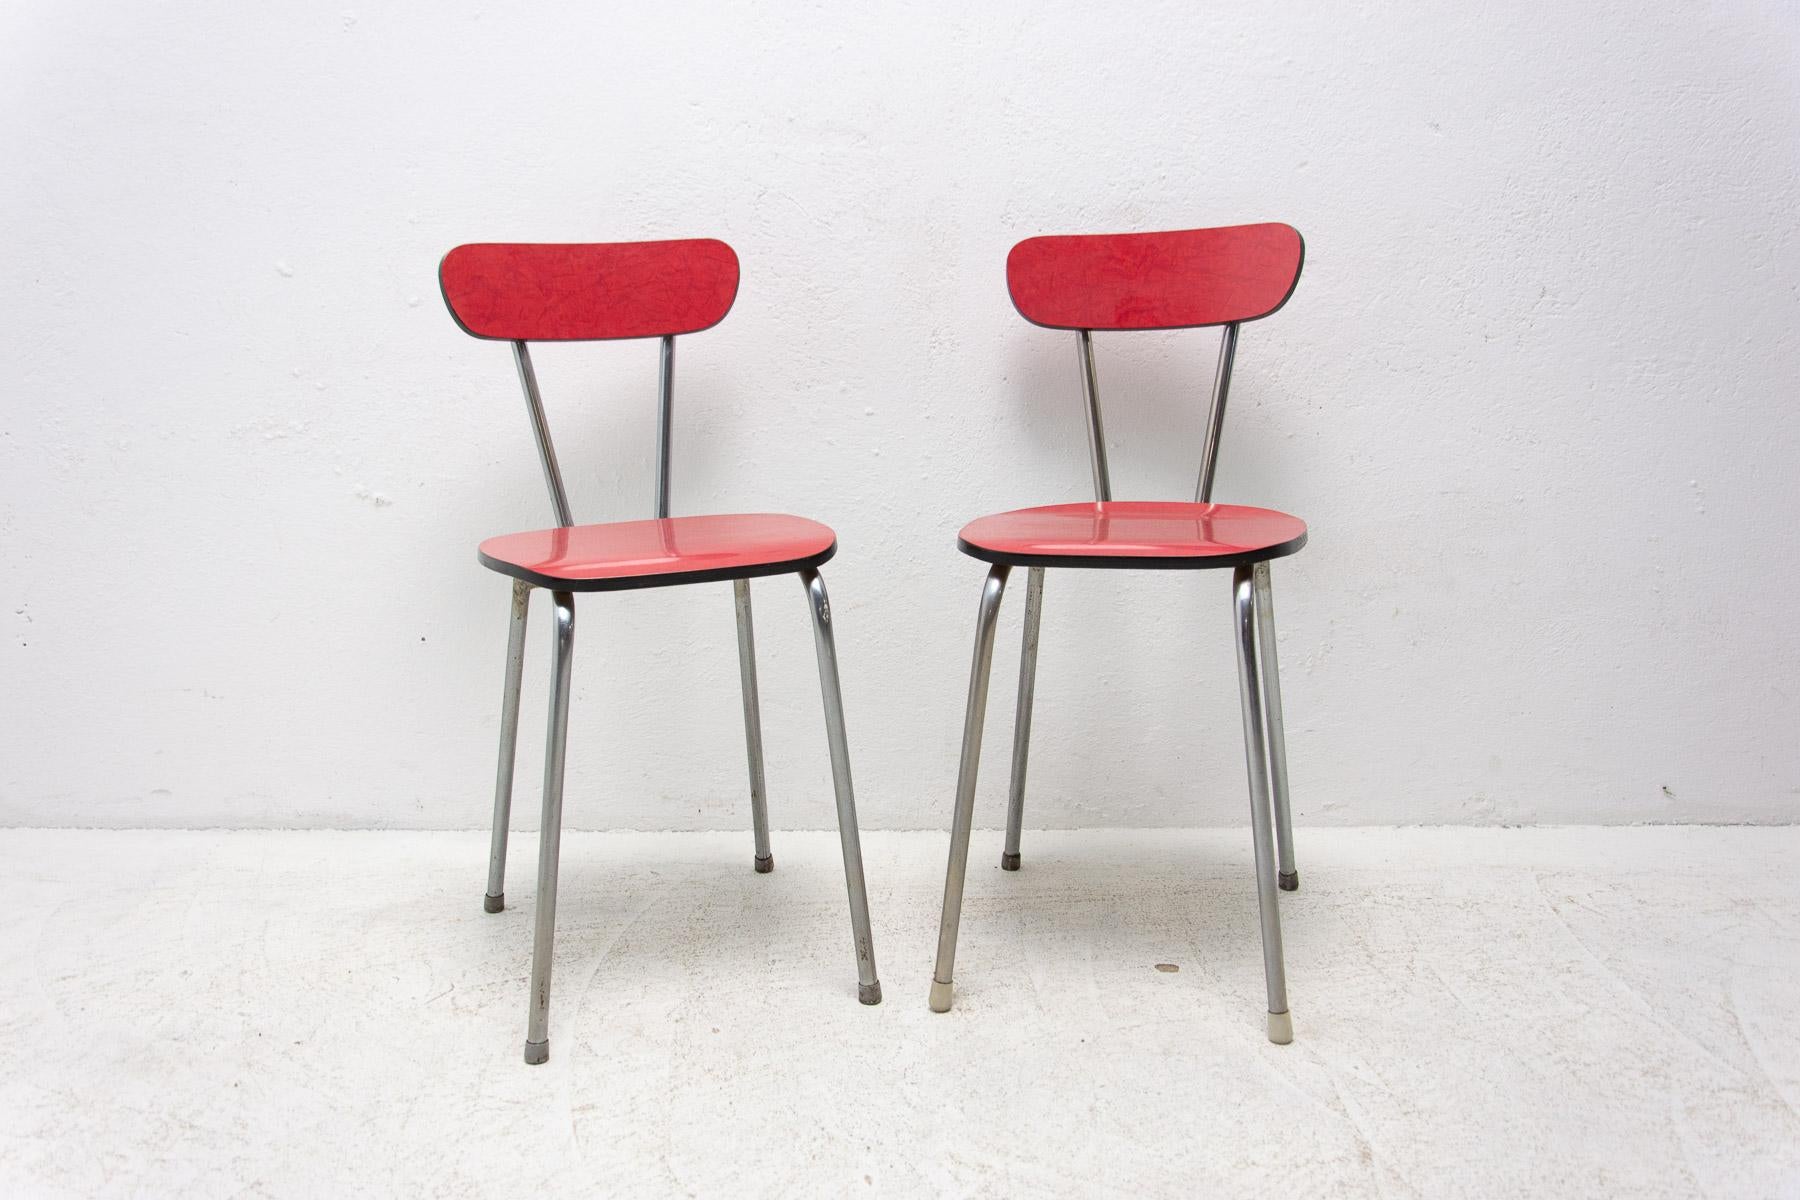 Mitte des Jahrhunderts Farbe Formica Café oder Esszimmer Stühle mit Chrom Beine. Hergestellt in den 1960er Jahren. In sehr gutem Vintage-Zustand. Der Preis gilt für das Paar.

Maße: Höhe: 78 cm

Breite: 35 cm

Tiefe: 41 cm

Sitzhöhe: 46 cm.